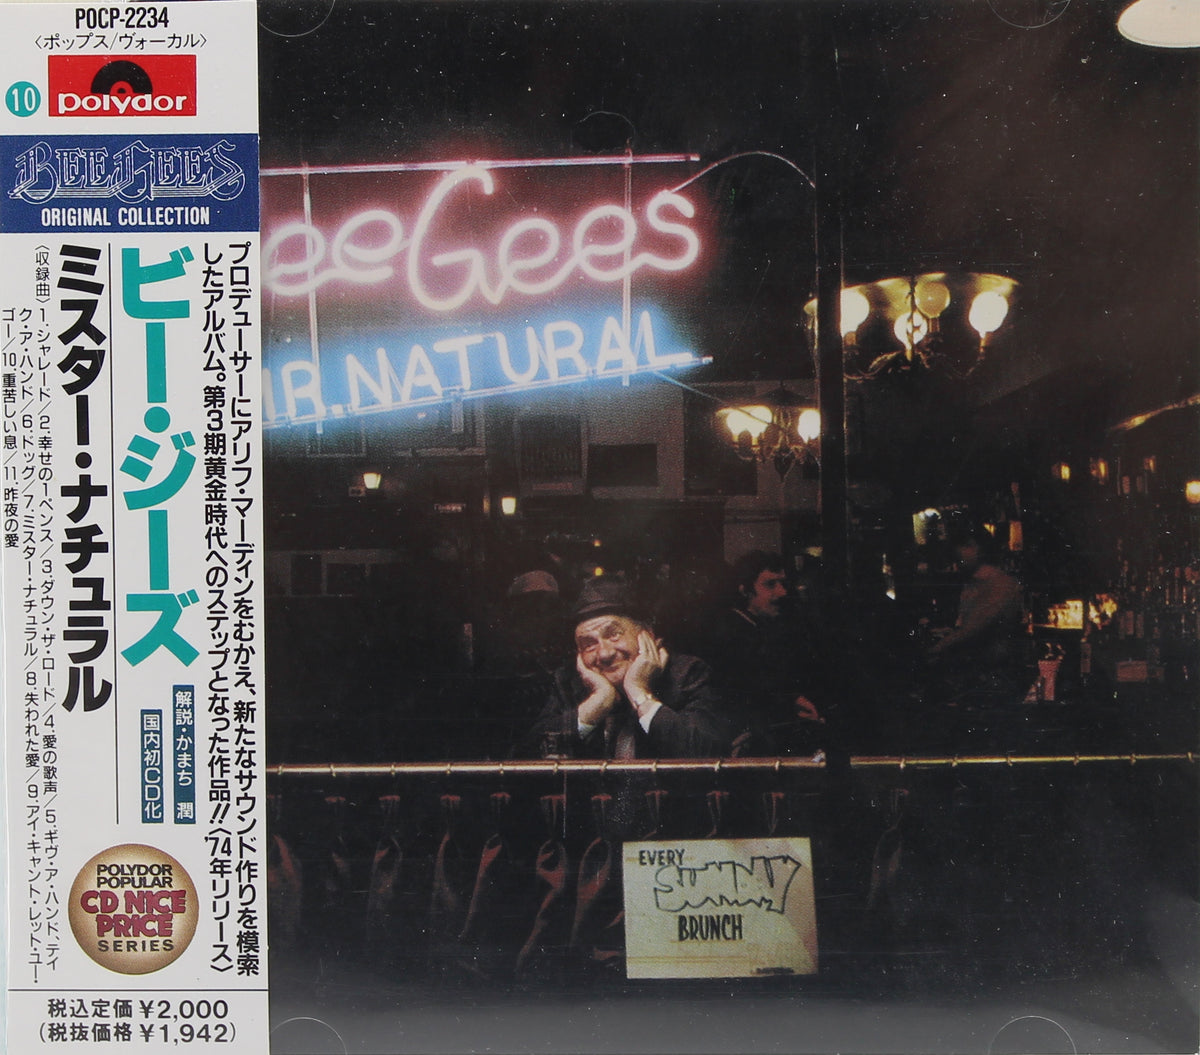 Bee Gees – Mr. Natural, CD, Album, Reissue, Japan 1992